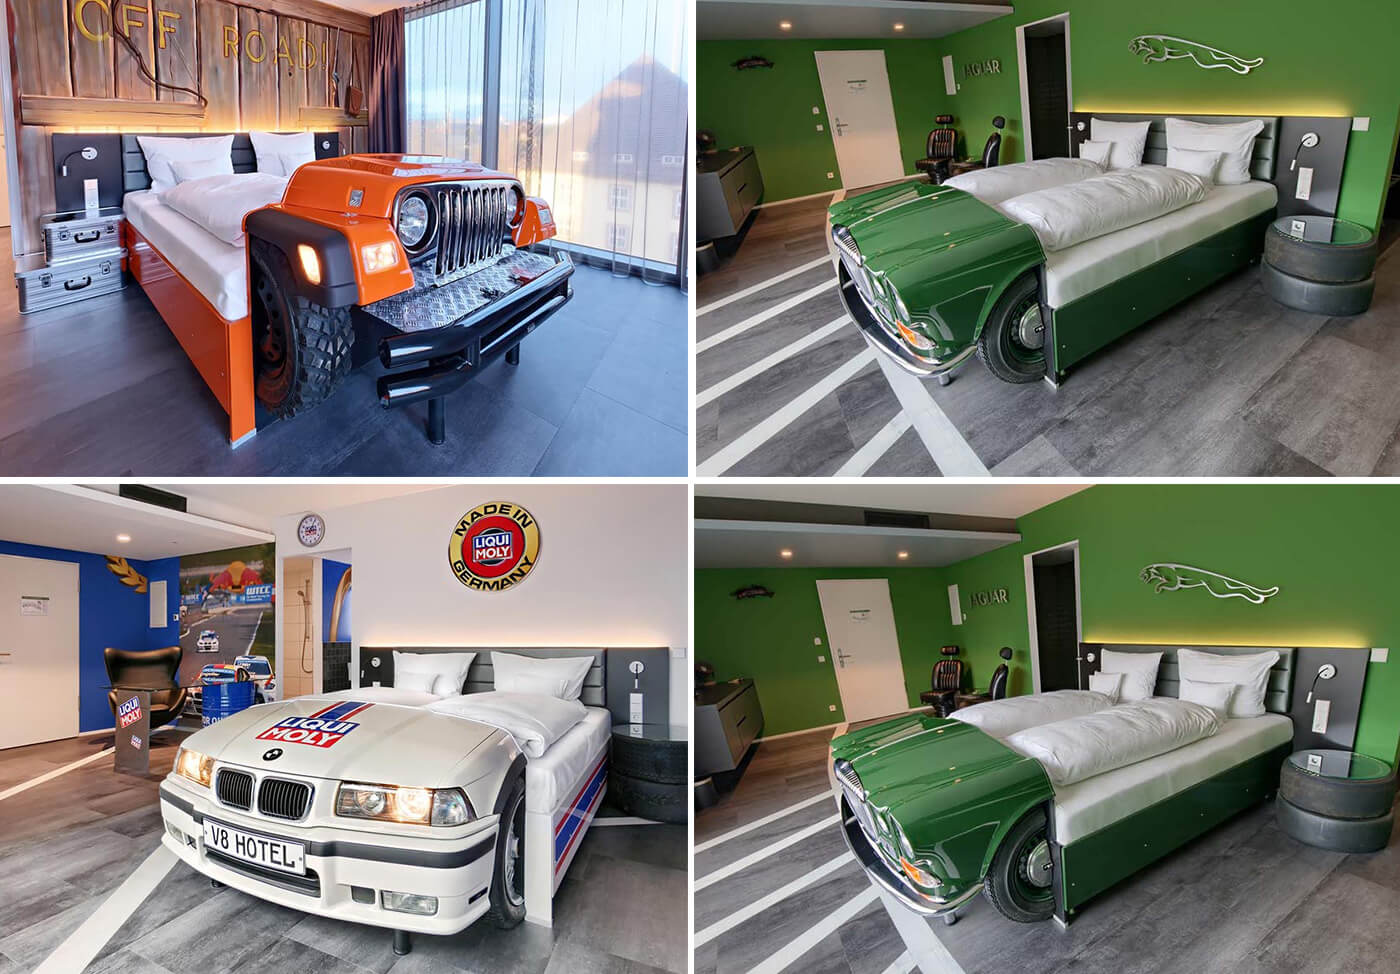 Khám phá V8 Hotel: Ngủ trên giường Mercedes-Benz, BMW, xung quanh toàn đồ cho hội cuồng xe - Ảnh 4.